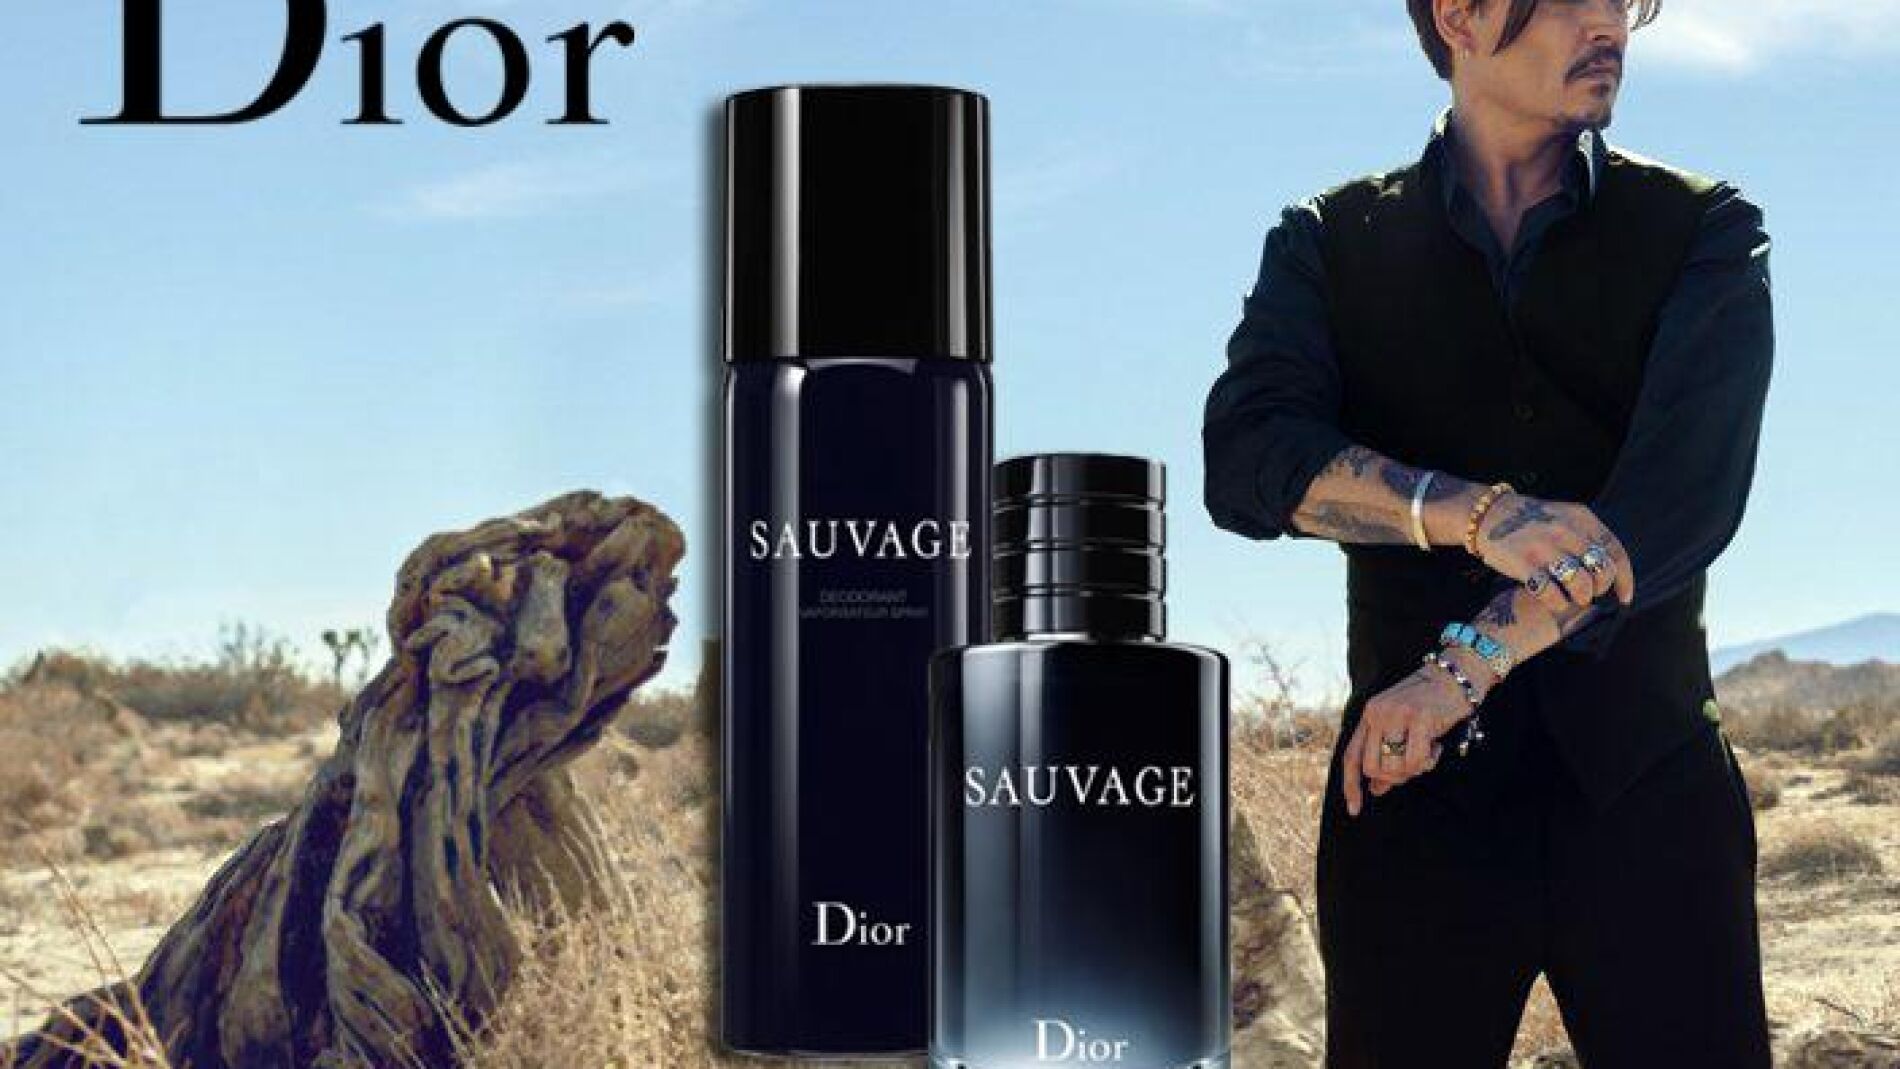 Las ventas del perfume Sauvage de Dior se disparan tras el juicio de Depp